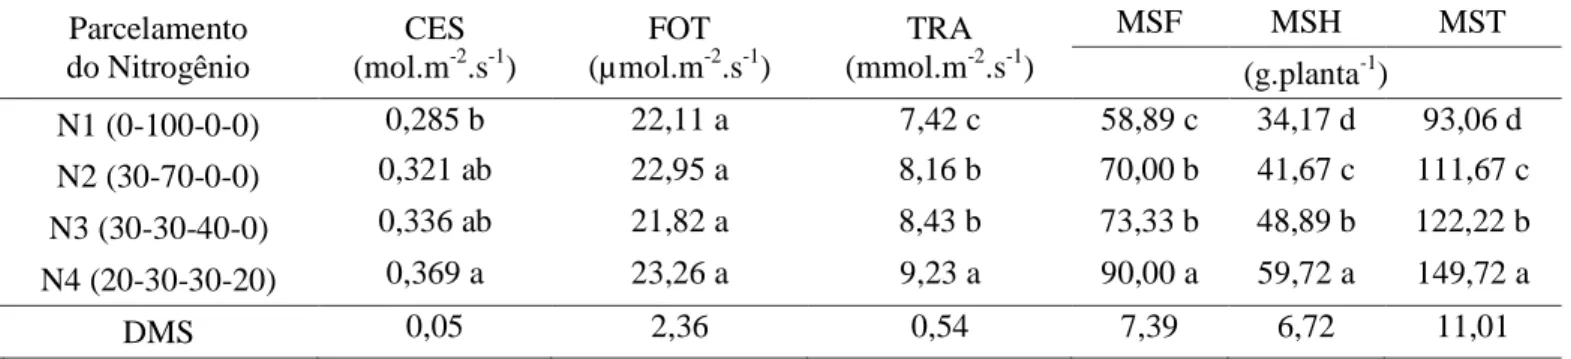 Tabela  5  -  Condutância  estomática  (CES),  fotossíntese  (FOT),  transpiração  (TRA),  matéria  seca  das  folhas  (MSF),  matéria  seca  das  hastes  (MSH)  e  matéria  seca  total  (MST)  do  meloeiro  submetido  ao  parcelamento da adubação nitrogen